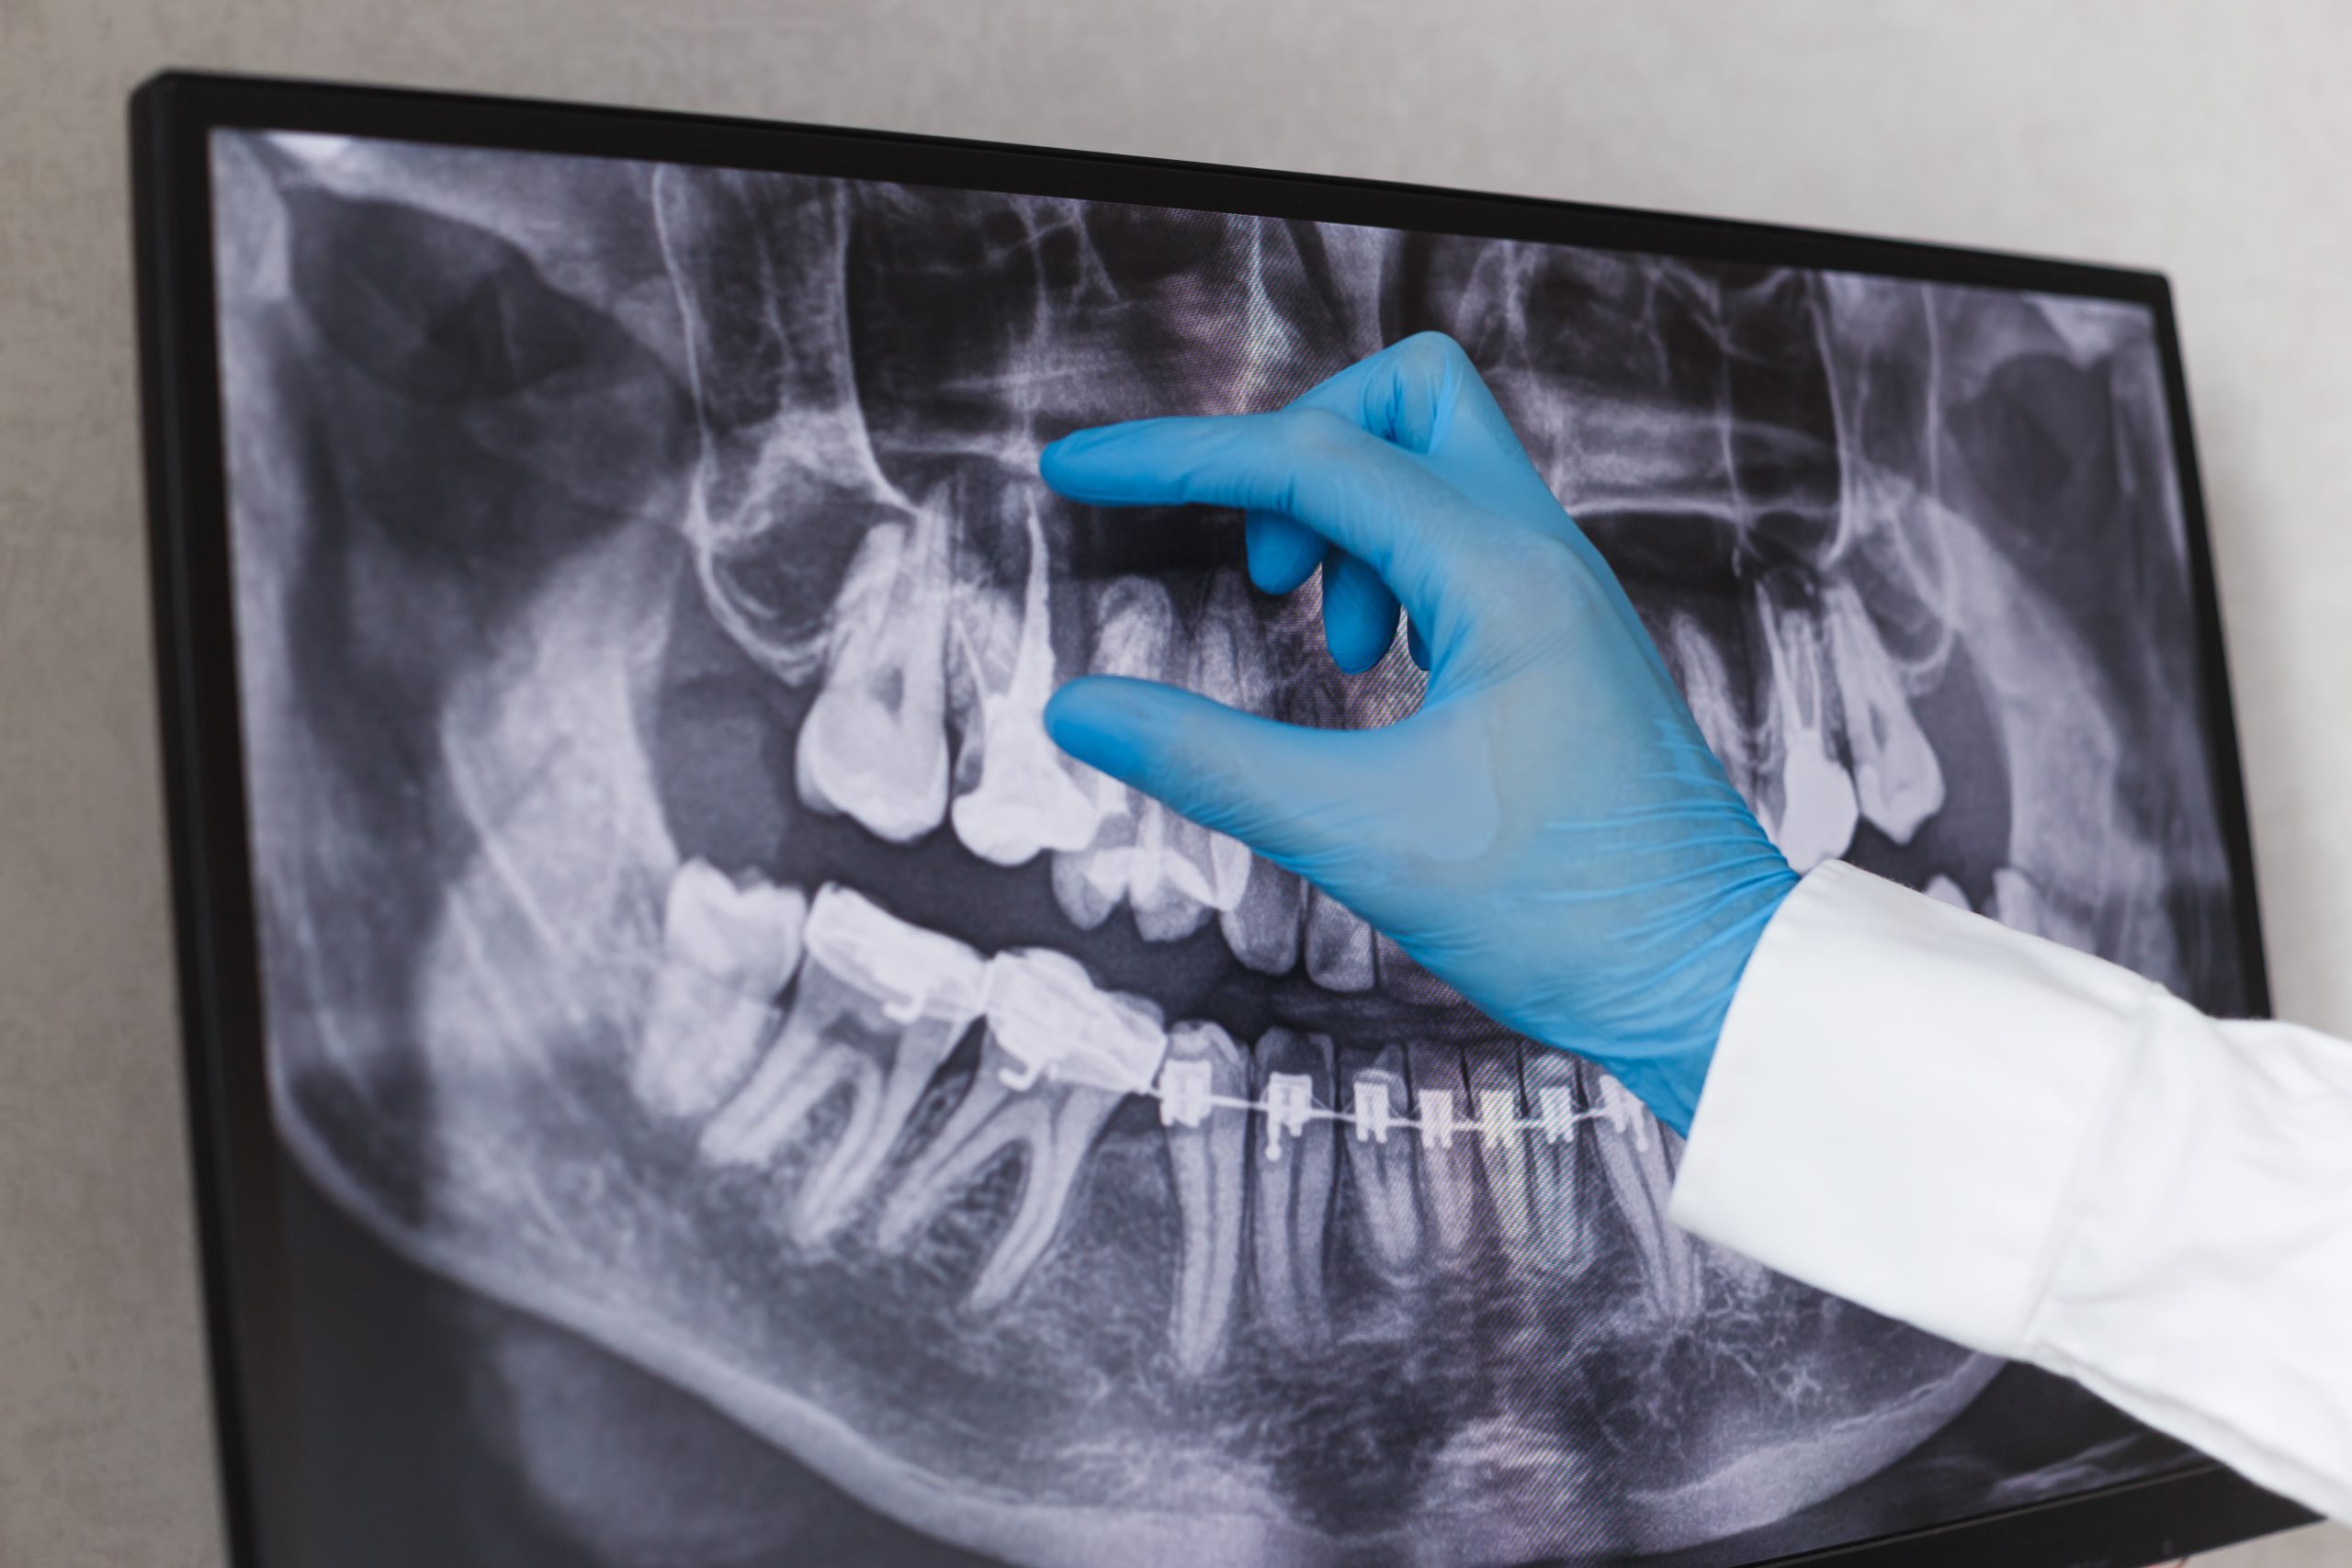 Diş hekimi x-ray üzerinde görünen kanal dolgusu yapılmış dişi gösteriyor